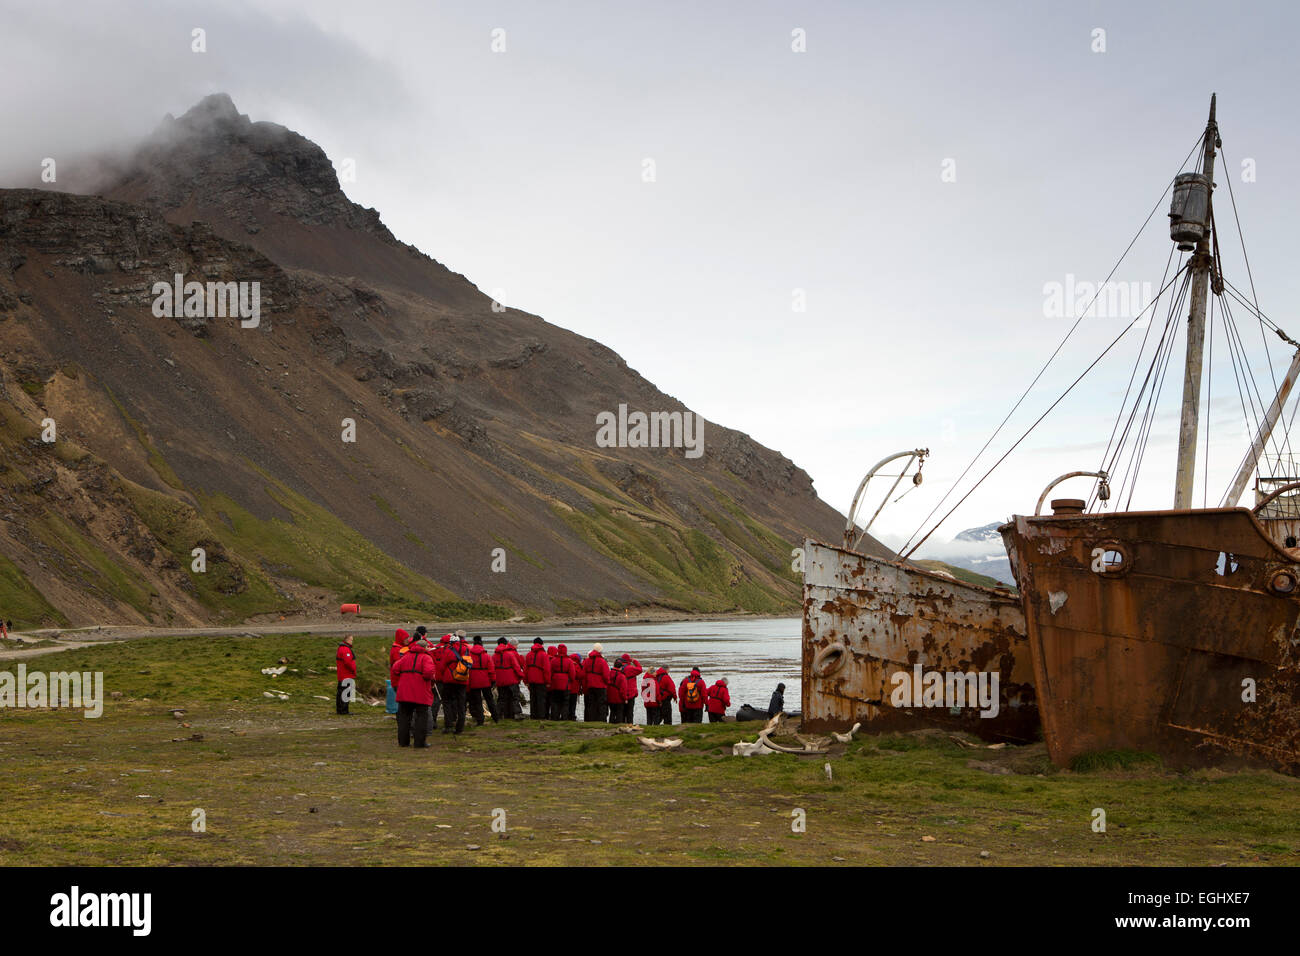 Süd-Georgien, Grytviken, Kreuzfahrt-Passagiere am Bug der Abdichtung Boote Dias und Albatros Stockfoto